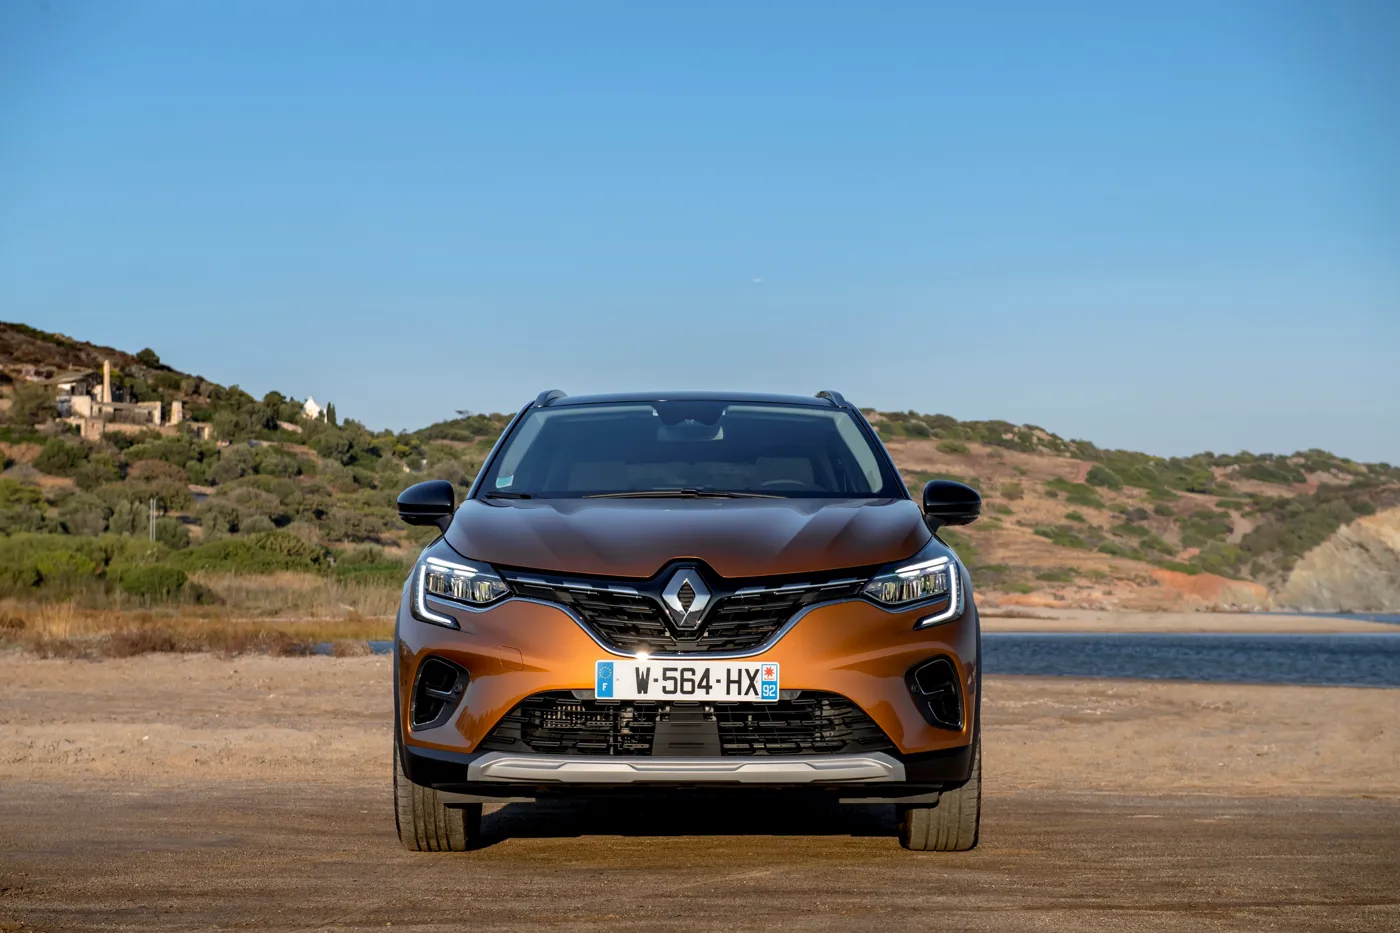 Renault Captur 1.0 TCe 100 (2020), Reviews